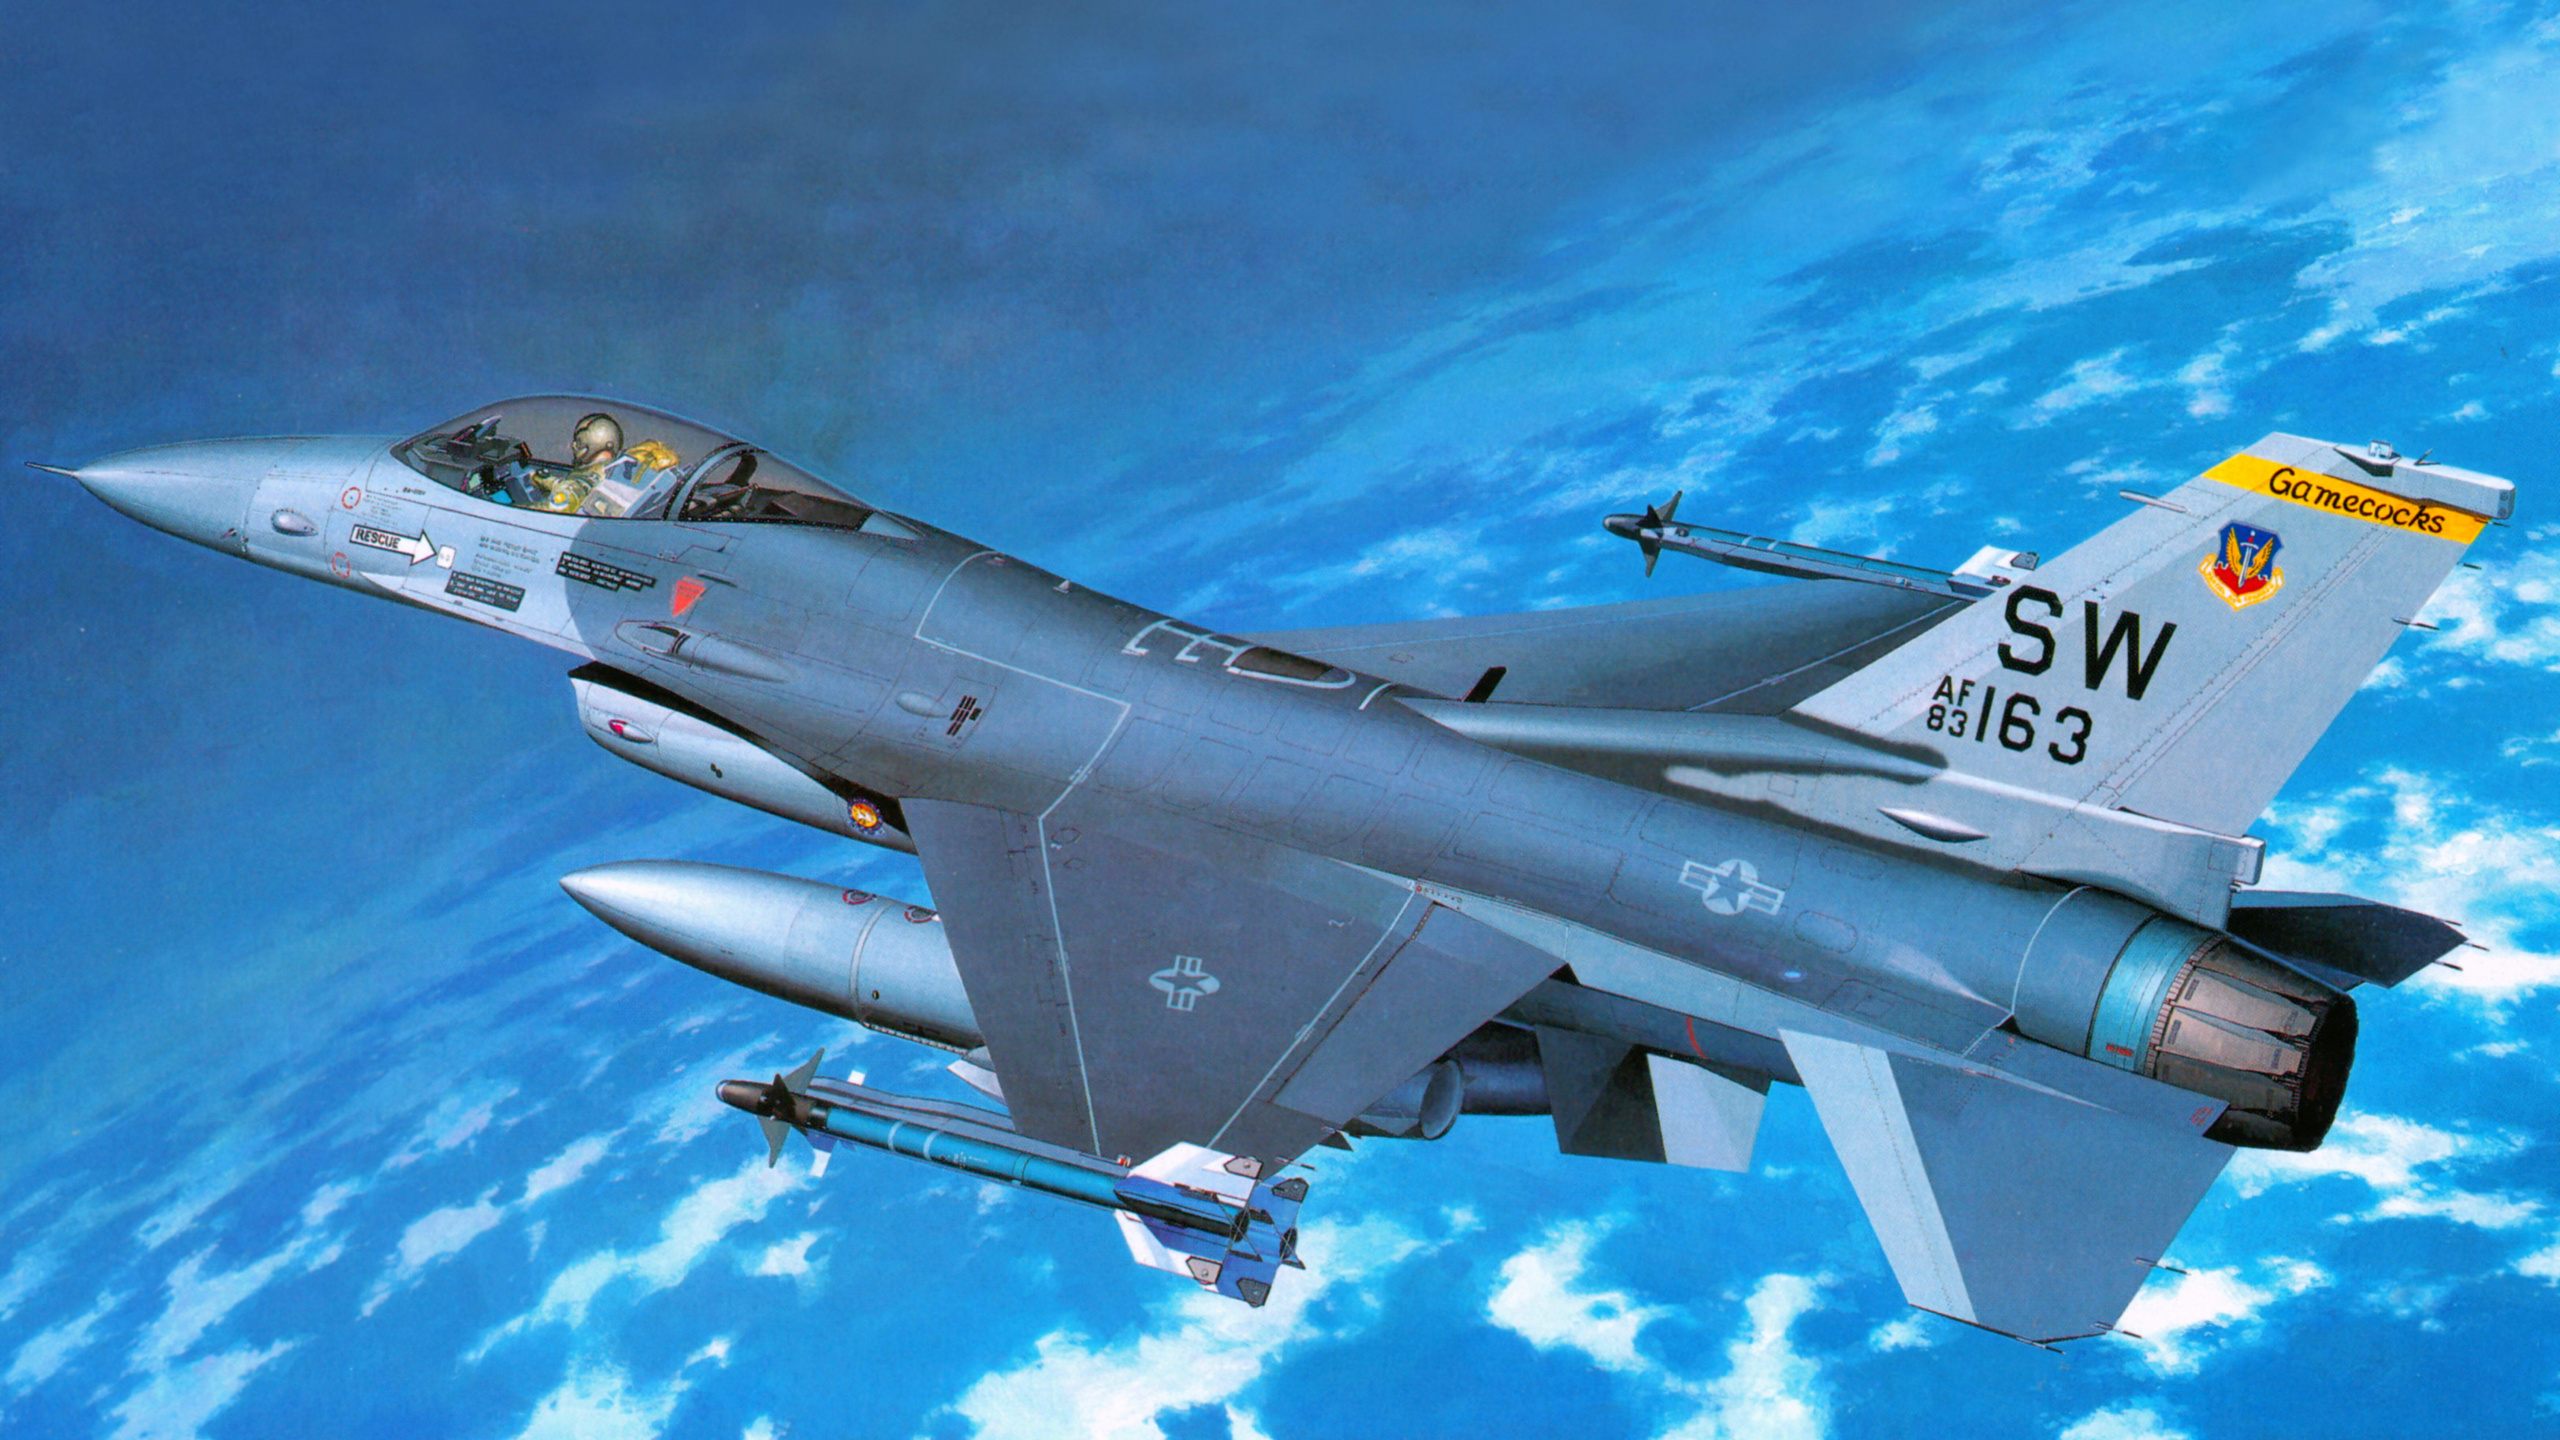 长谷川公司, 塑料模型, 军用飞机, 航空, 空军 壁纸 2560x1440 允许